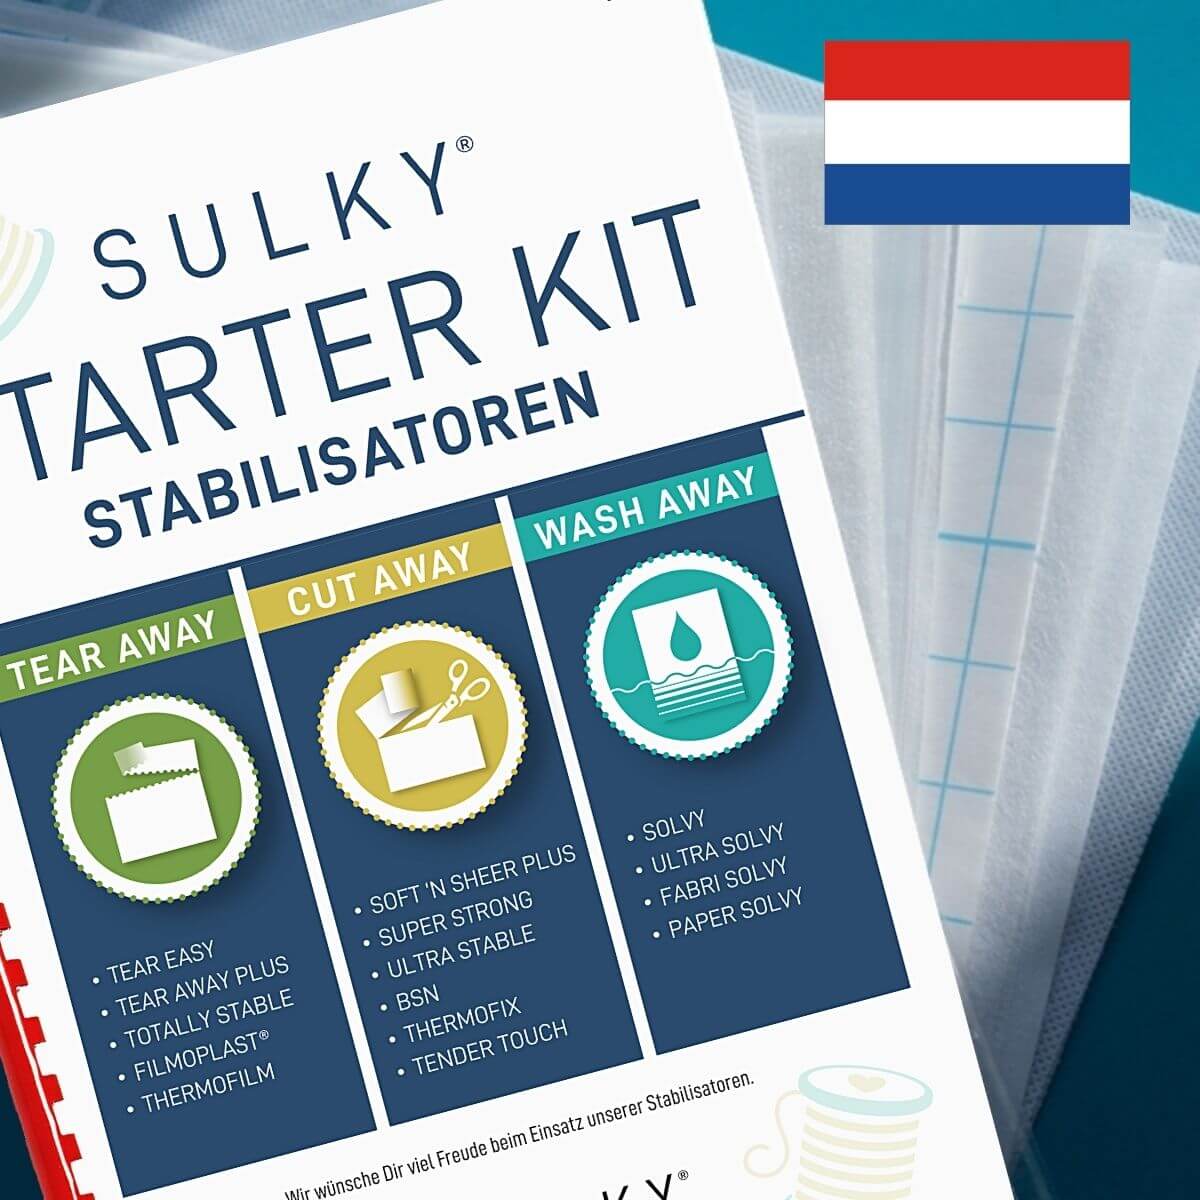 SULKY STARTER KIT - Stabilisatoren (in
Niederländisch) - mit 15 Musterbögen